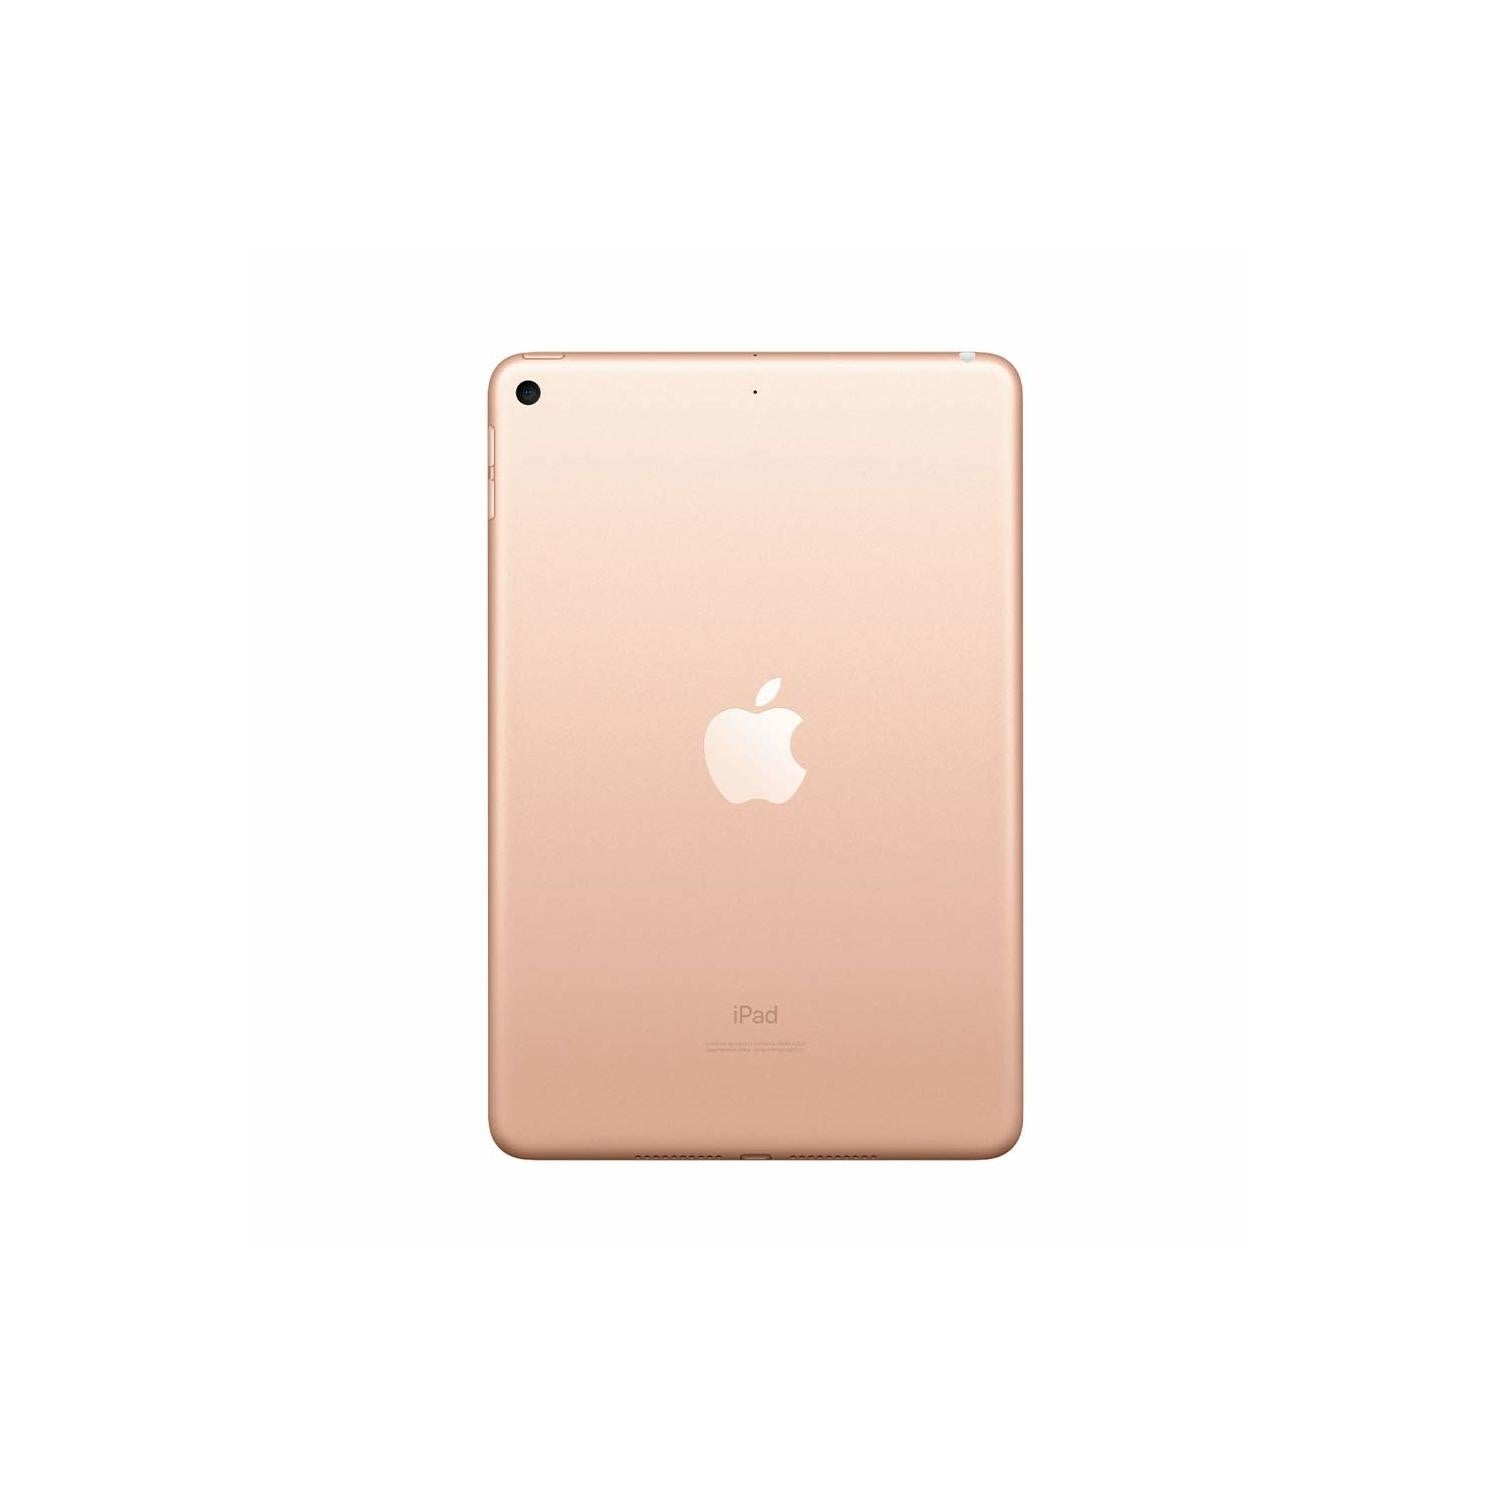 2019 Apple iPad Mini 5 Wi-Fi, 64GB, Gold (MUQY2B/A) - Refurbished Good